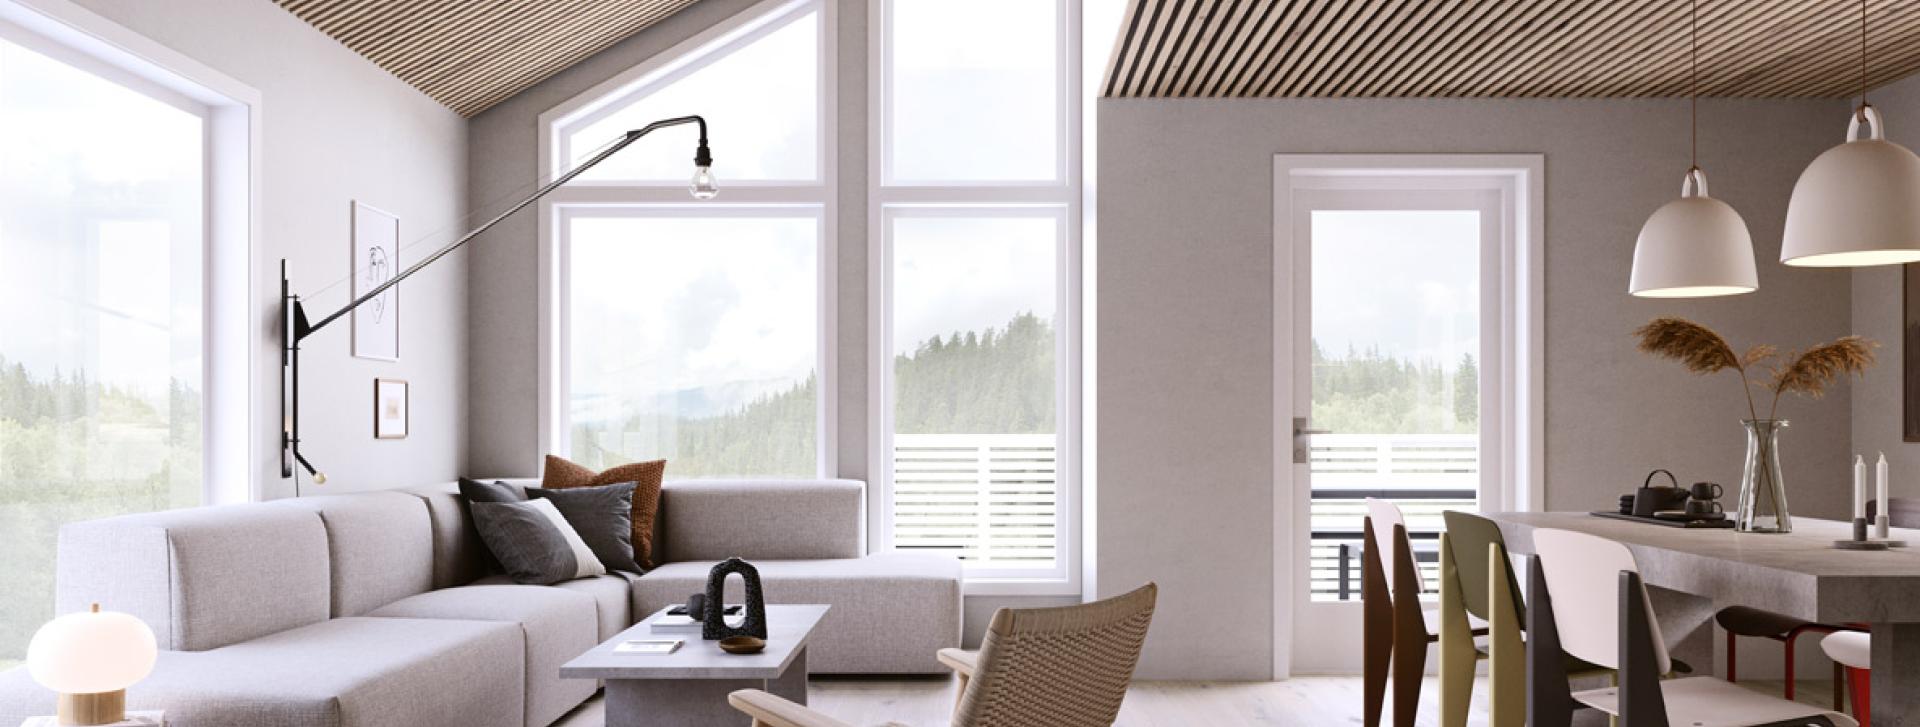 Lys og åpen stue- og kjøkkenløsning i moderne hus fra Nordbohus